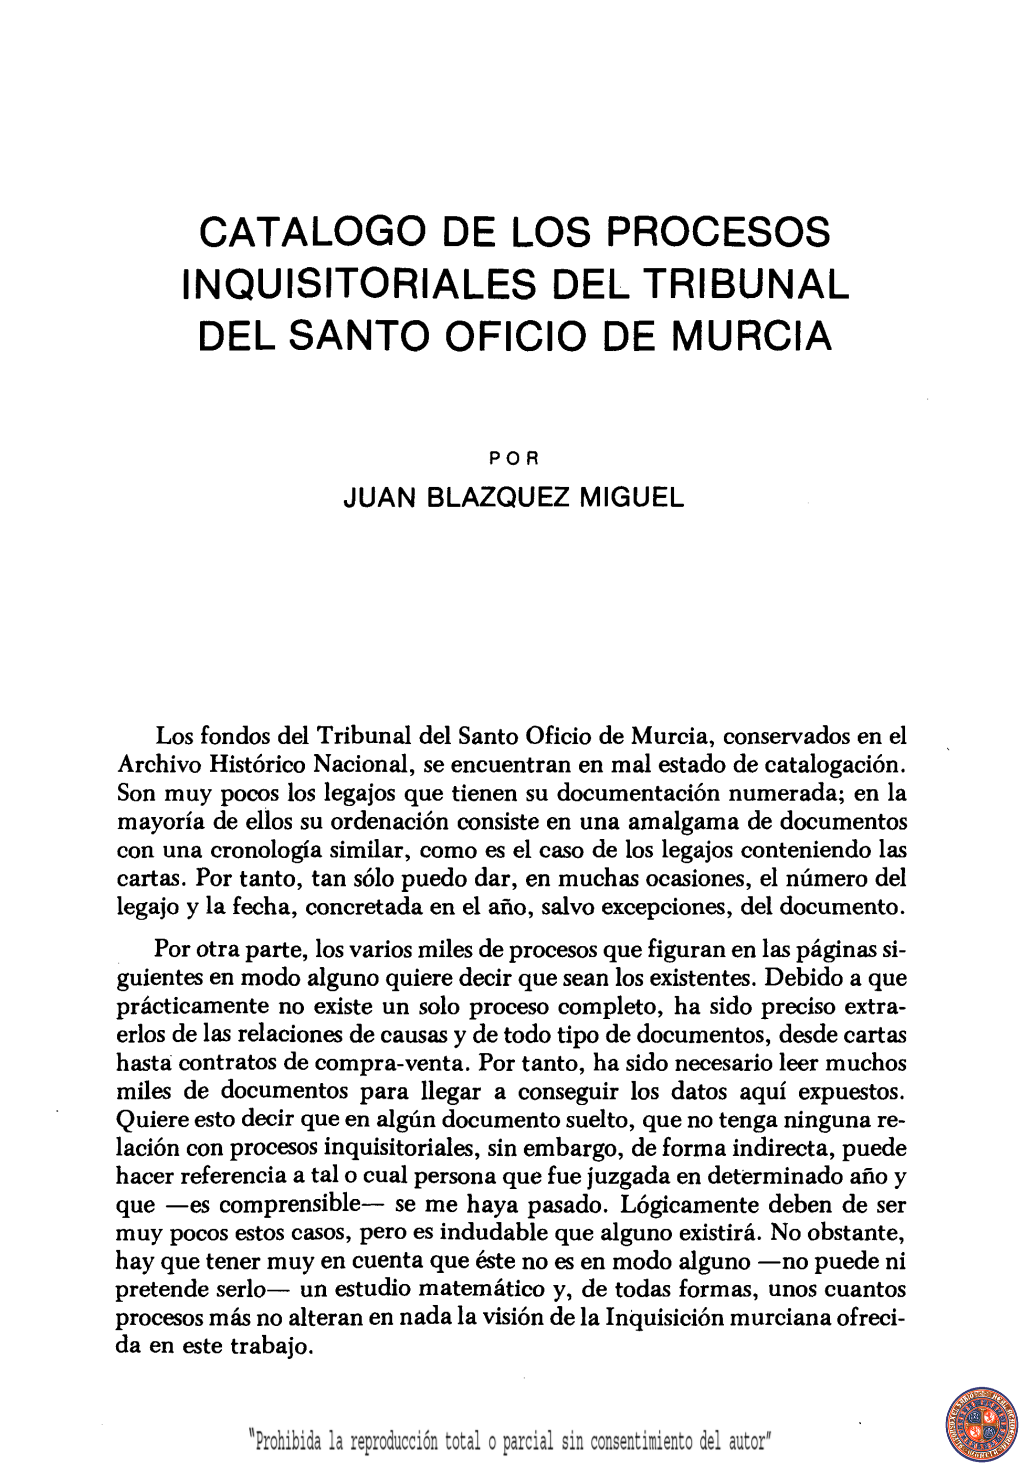 Catalogo De Los Procesos Inquisitoriales Del Tribunal Del Santo Oficio De Murcia